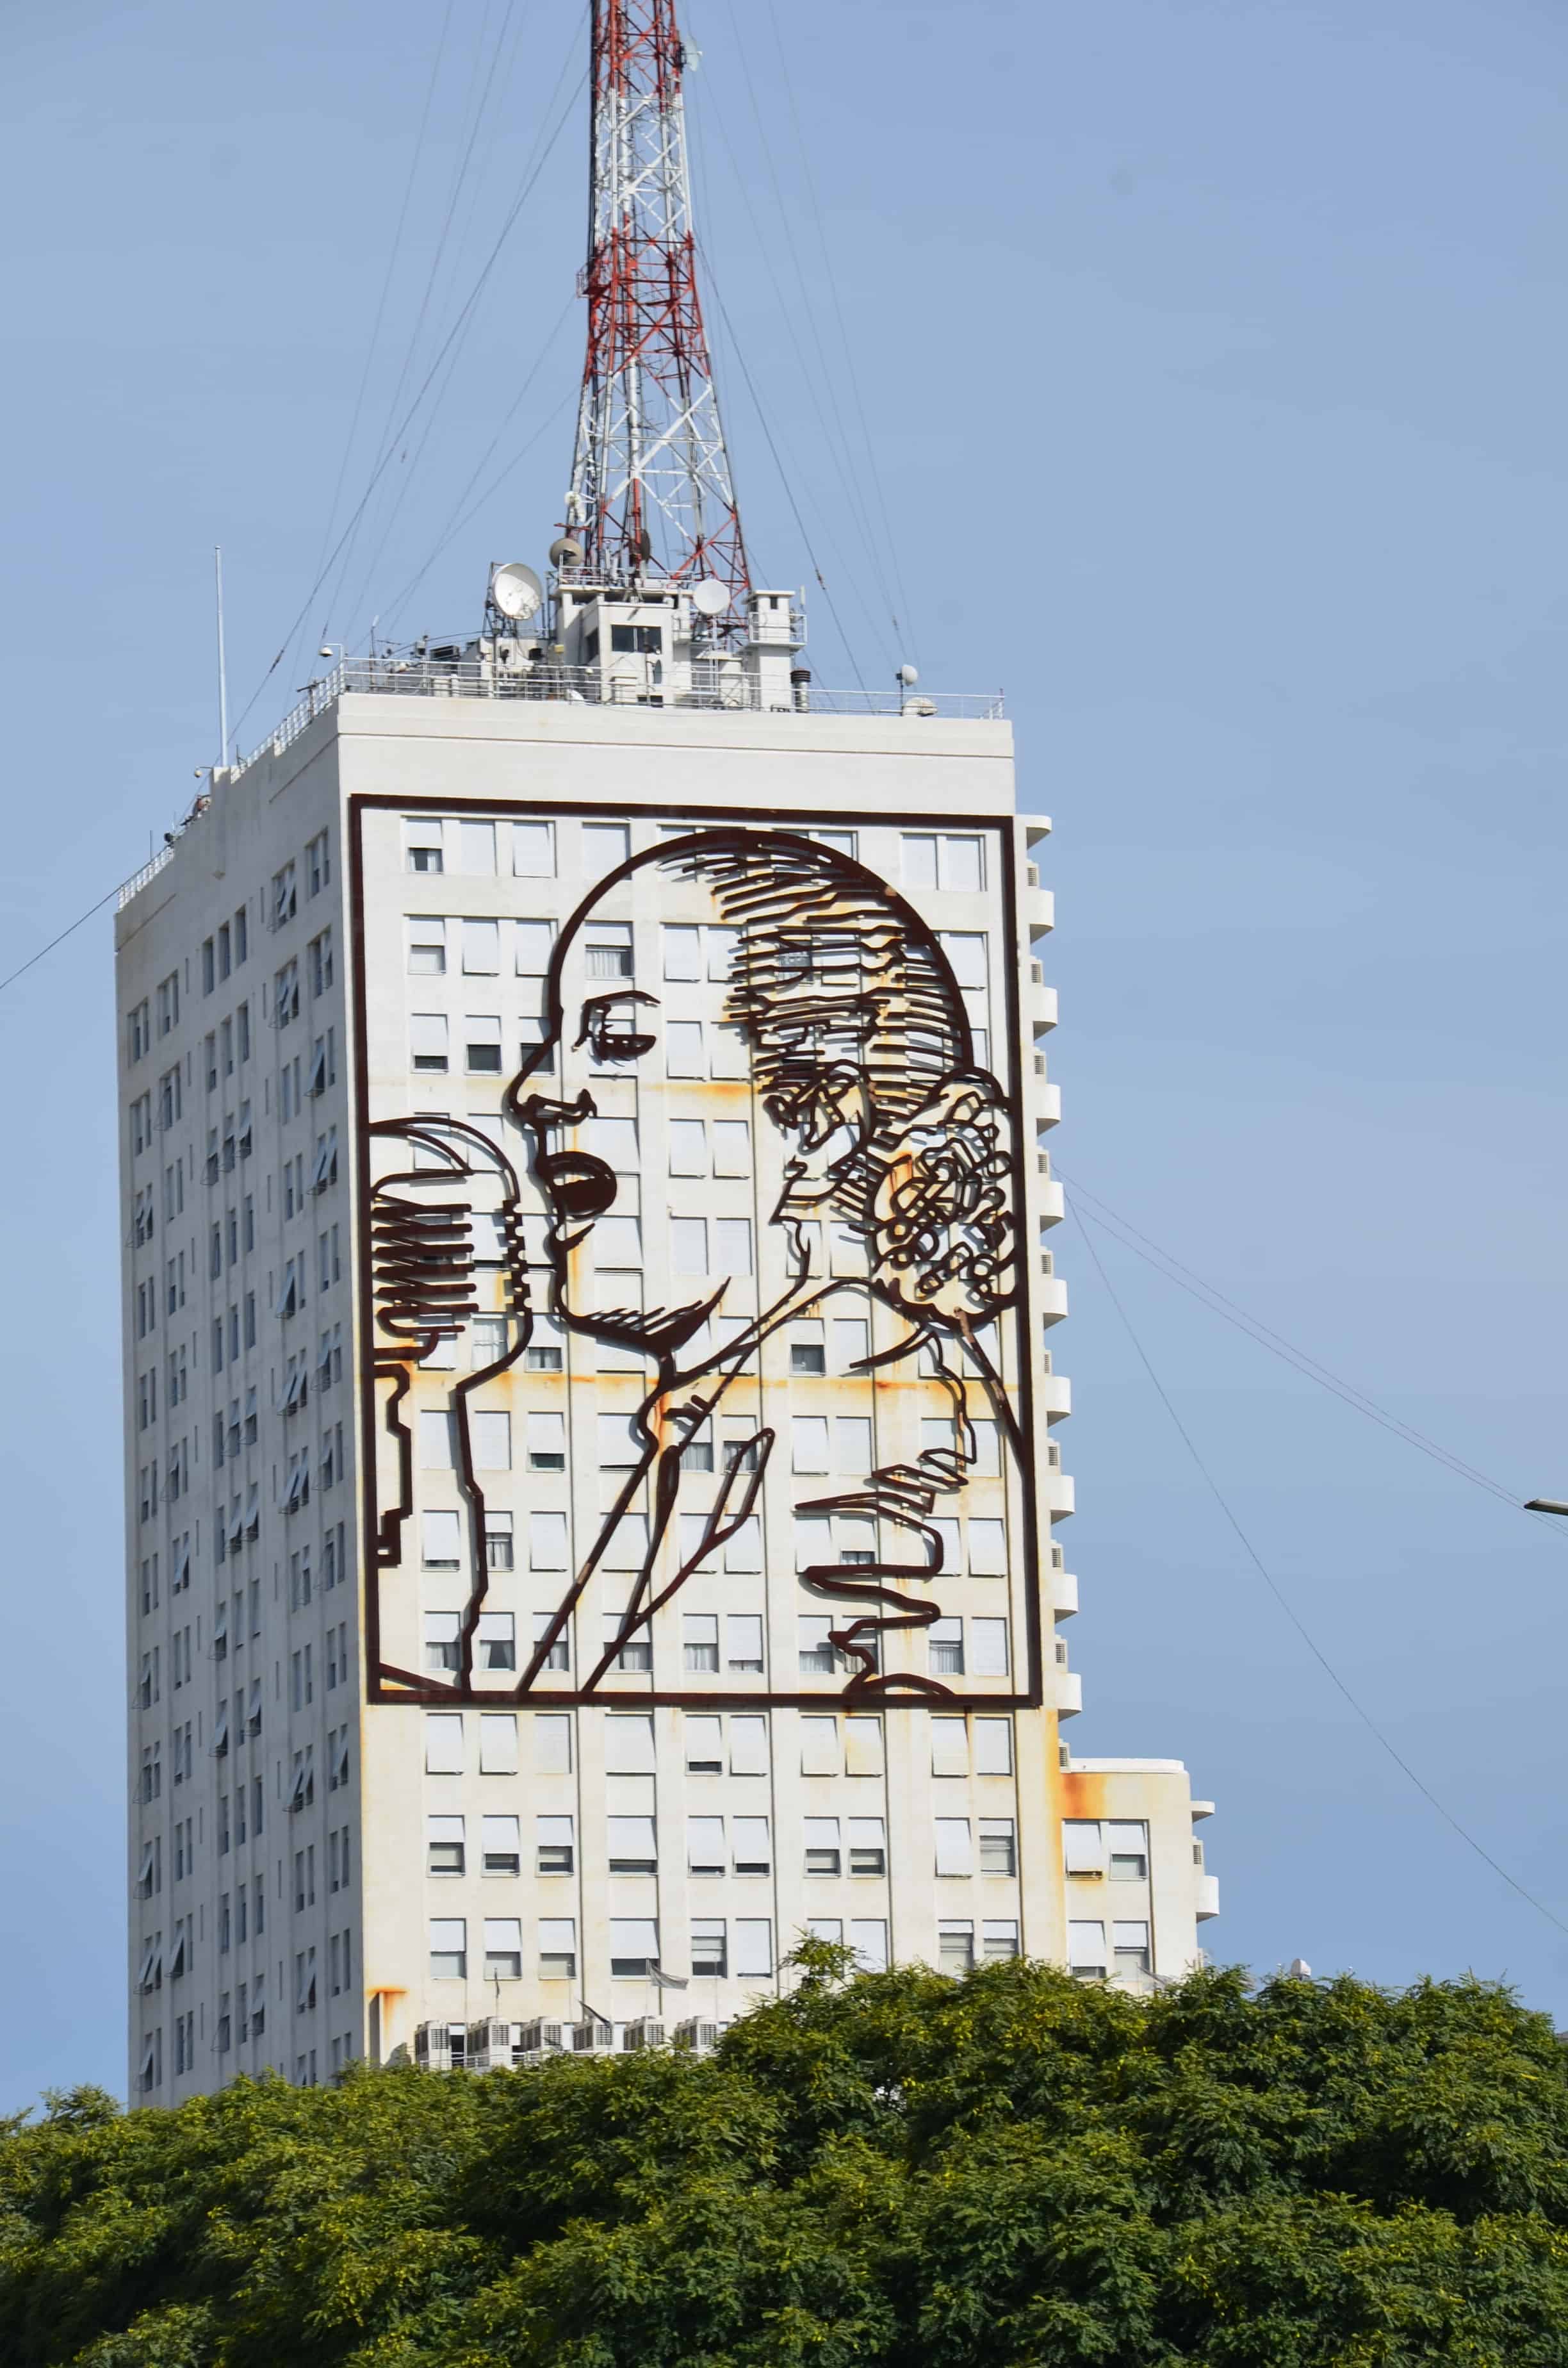 Eva Perón building in Buenos Aires, Argentina